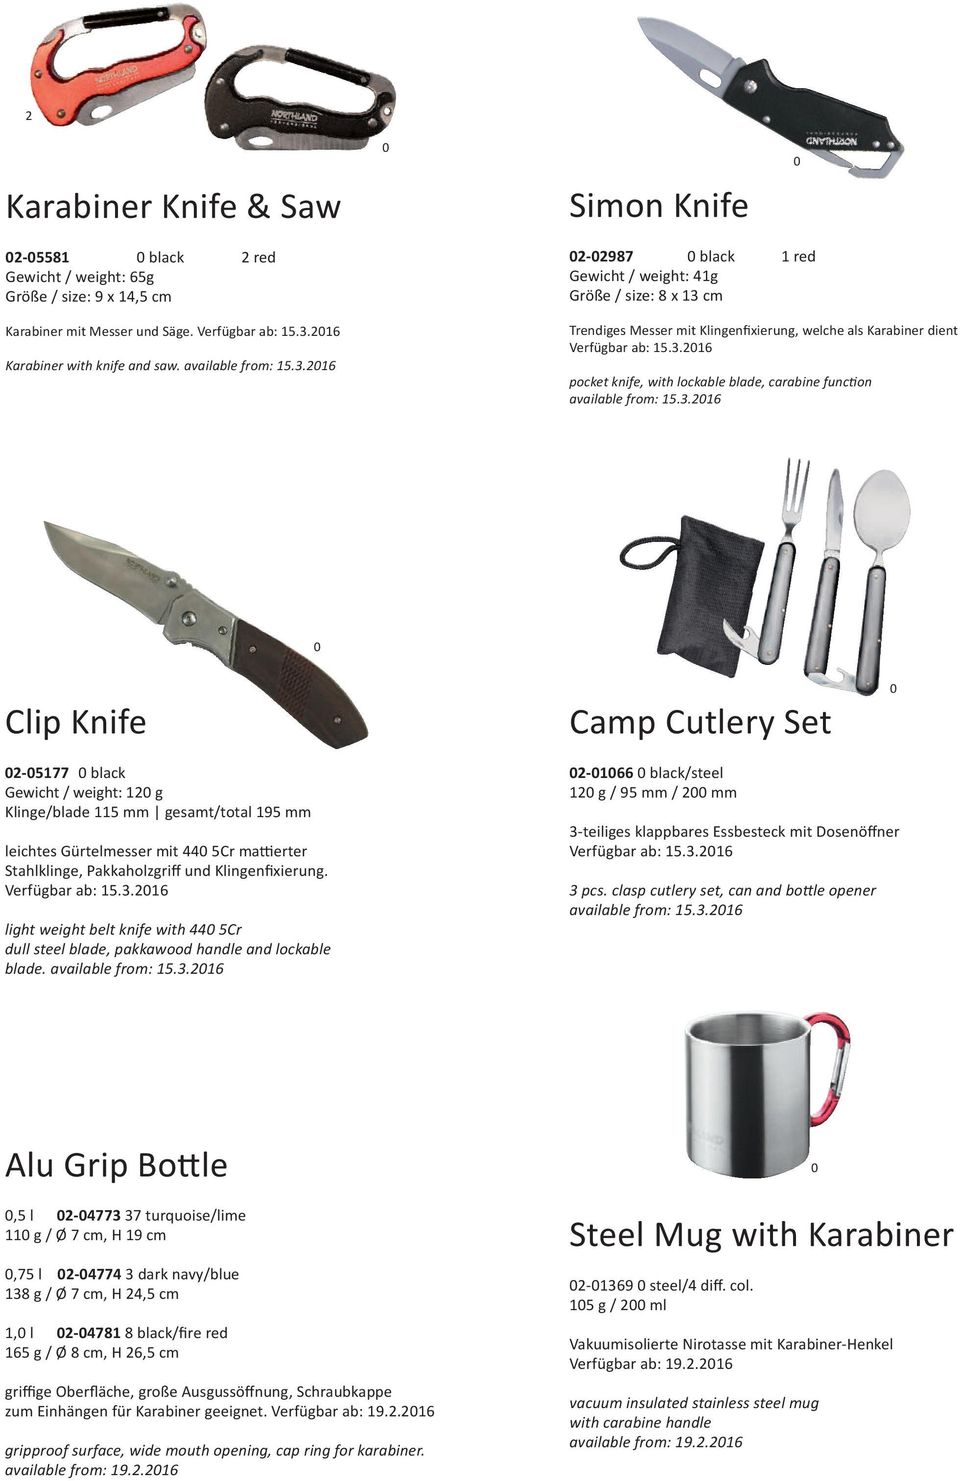 3.26 Clip Knife Camp Cutlery Set 2-577 black Gewicht / weight: 2 g Klinge/blade 5 mm gesamt/total 95 mm leichtes Gürtelmesser mit 44 5Cr mattierter Stahlklinge, Pakkaholzgriff und Klingenfixierung.